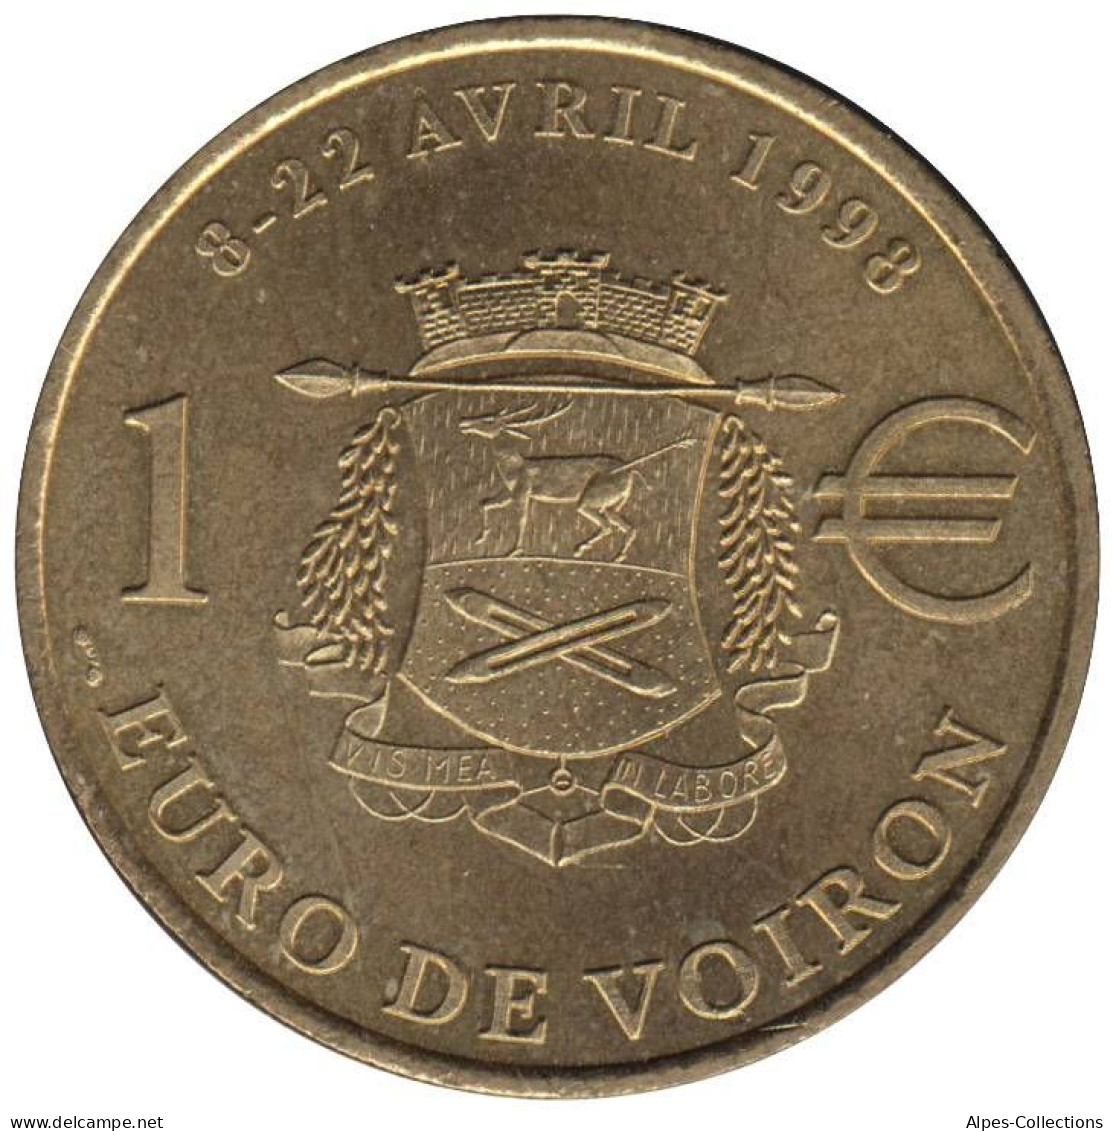 VOIRON - EU0010.1 - 1 EURO DES VILLES - Réf: T574 - 1998 - Euros Of The Cities